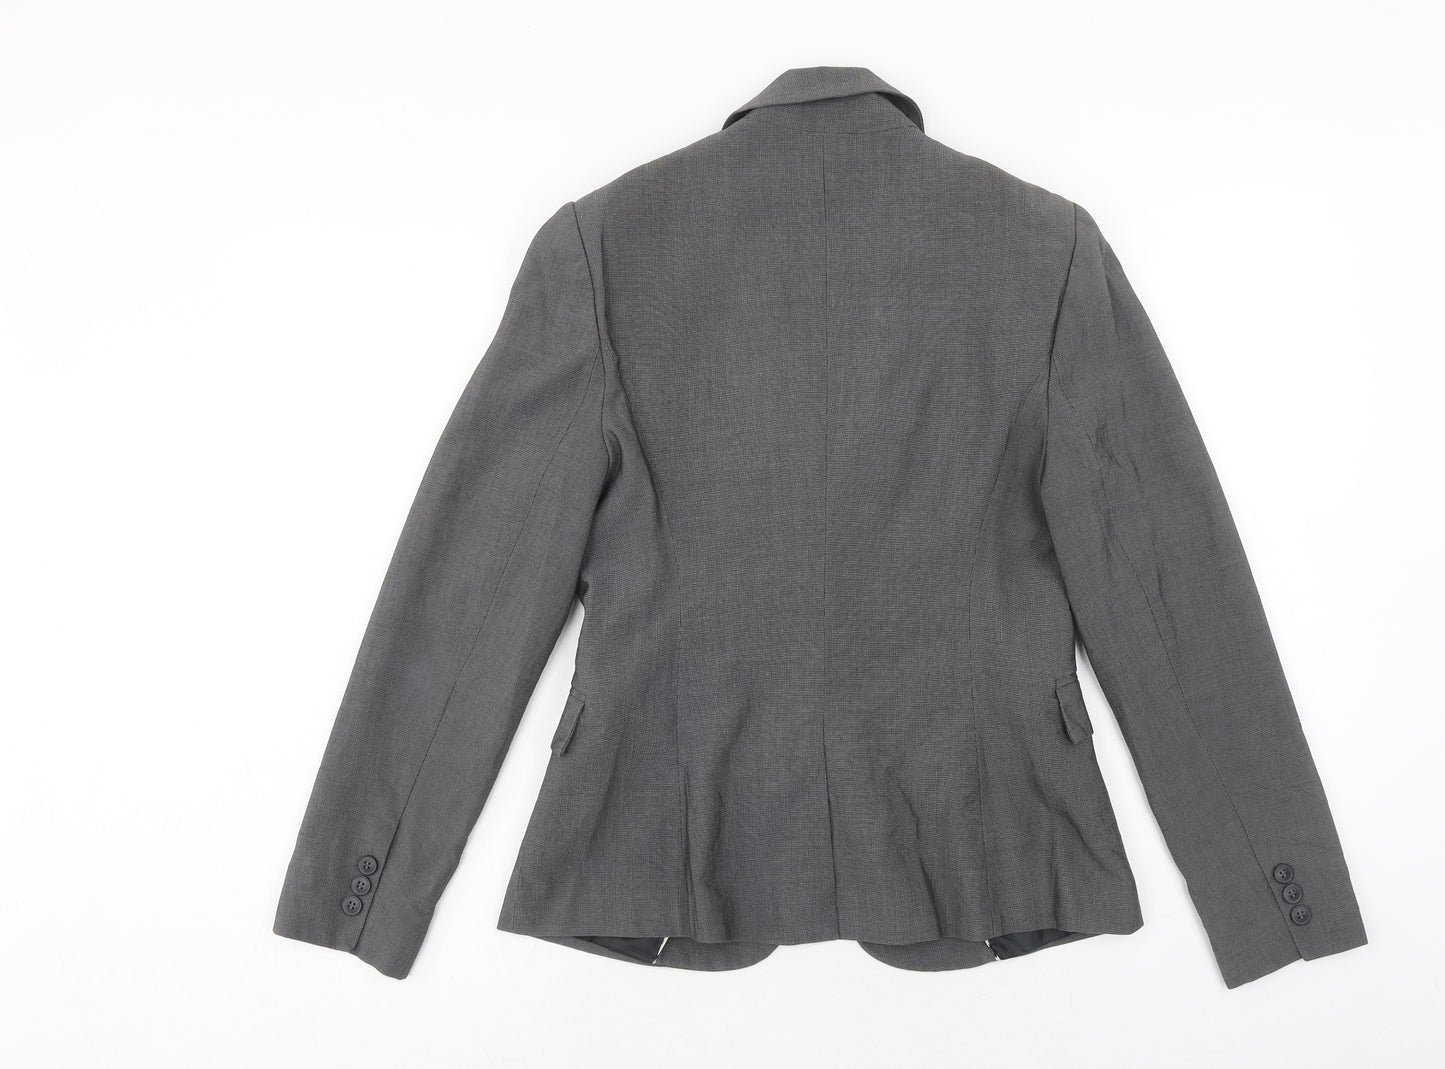 Papaya Womens Grey Polyester Jacket Suit Jacket Size 10